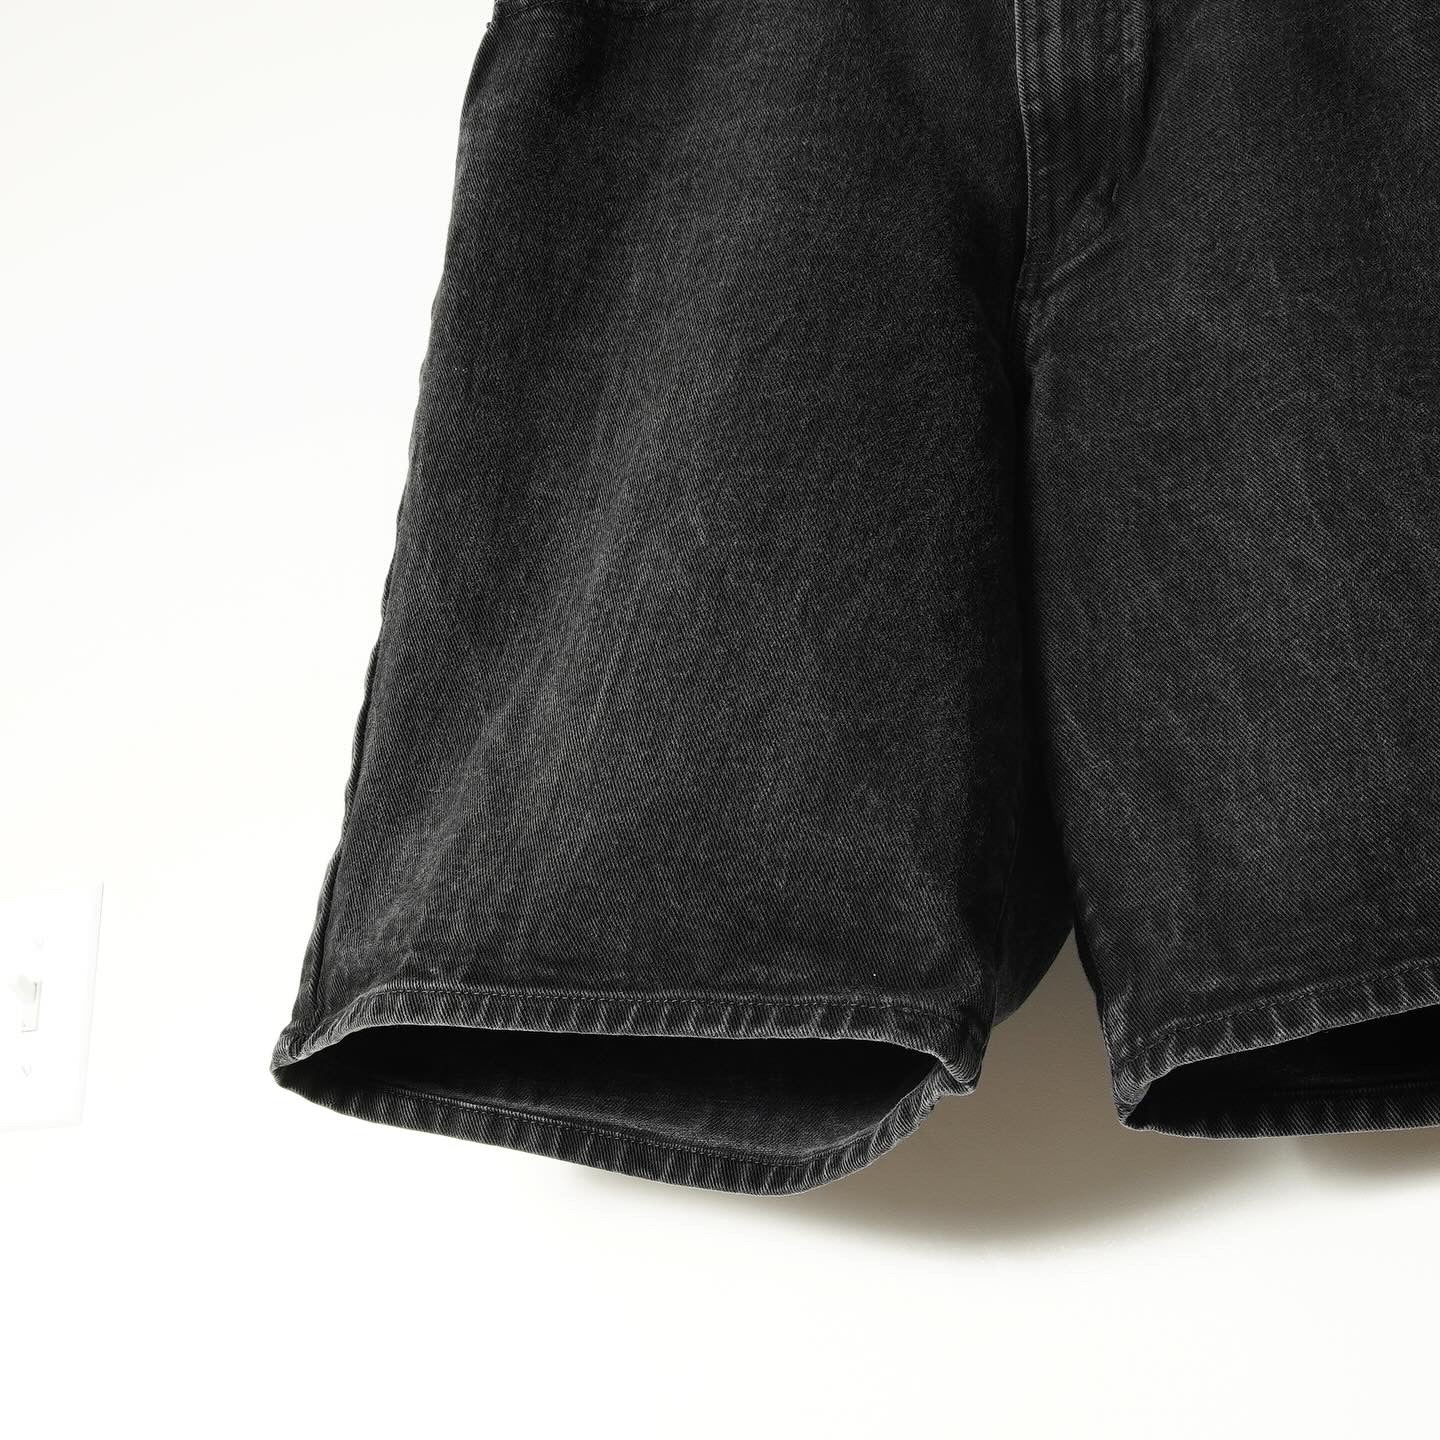 DKNY Black Denim shorts